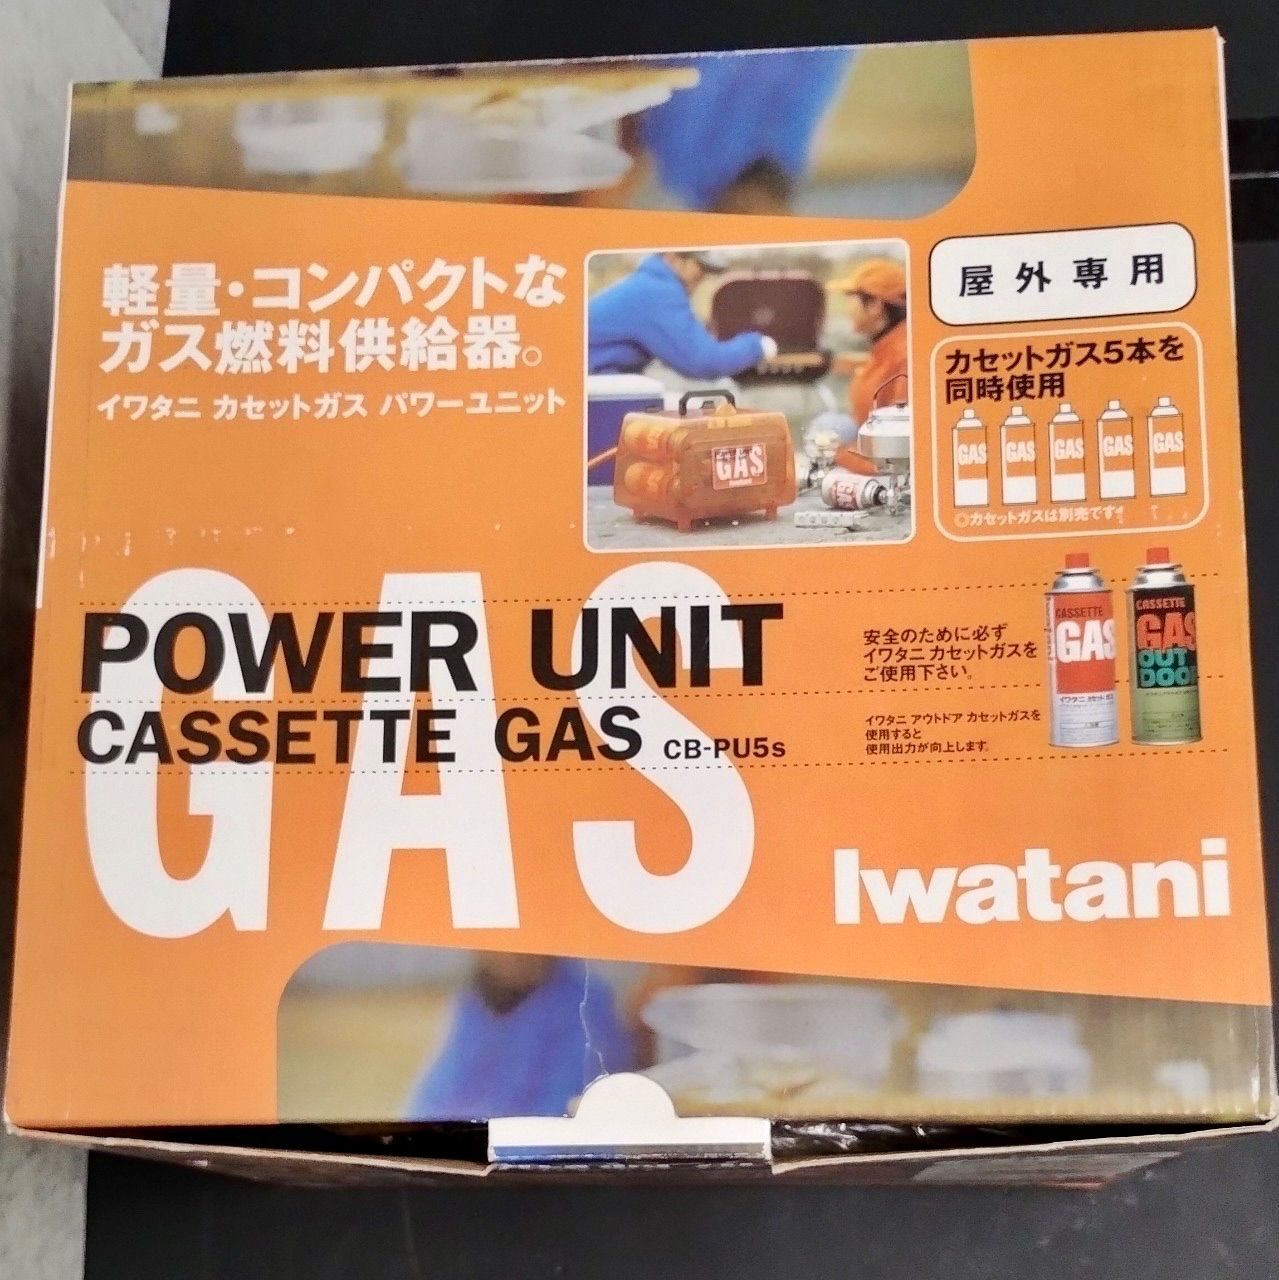 新品・未使用品】イワタニ パワーユニットカセットガス CB-PU5s - 【12